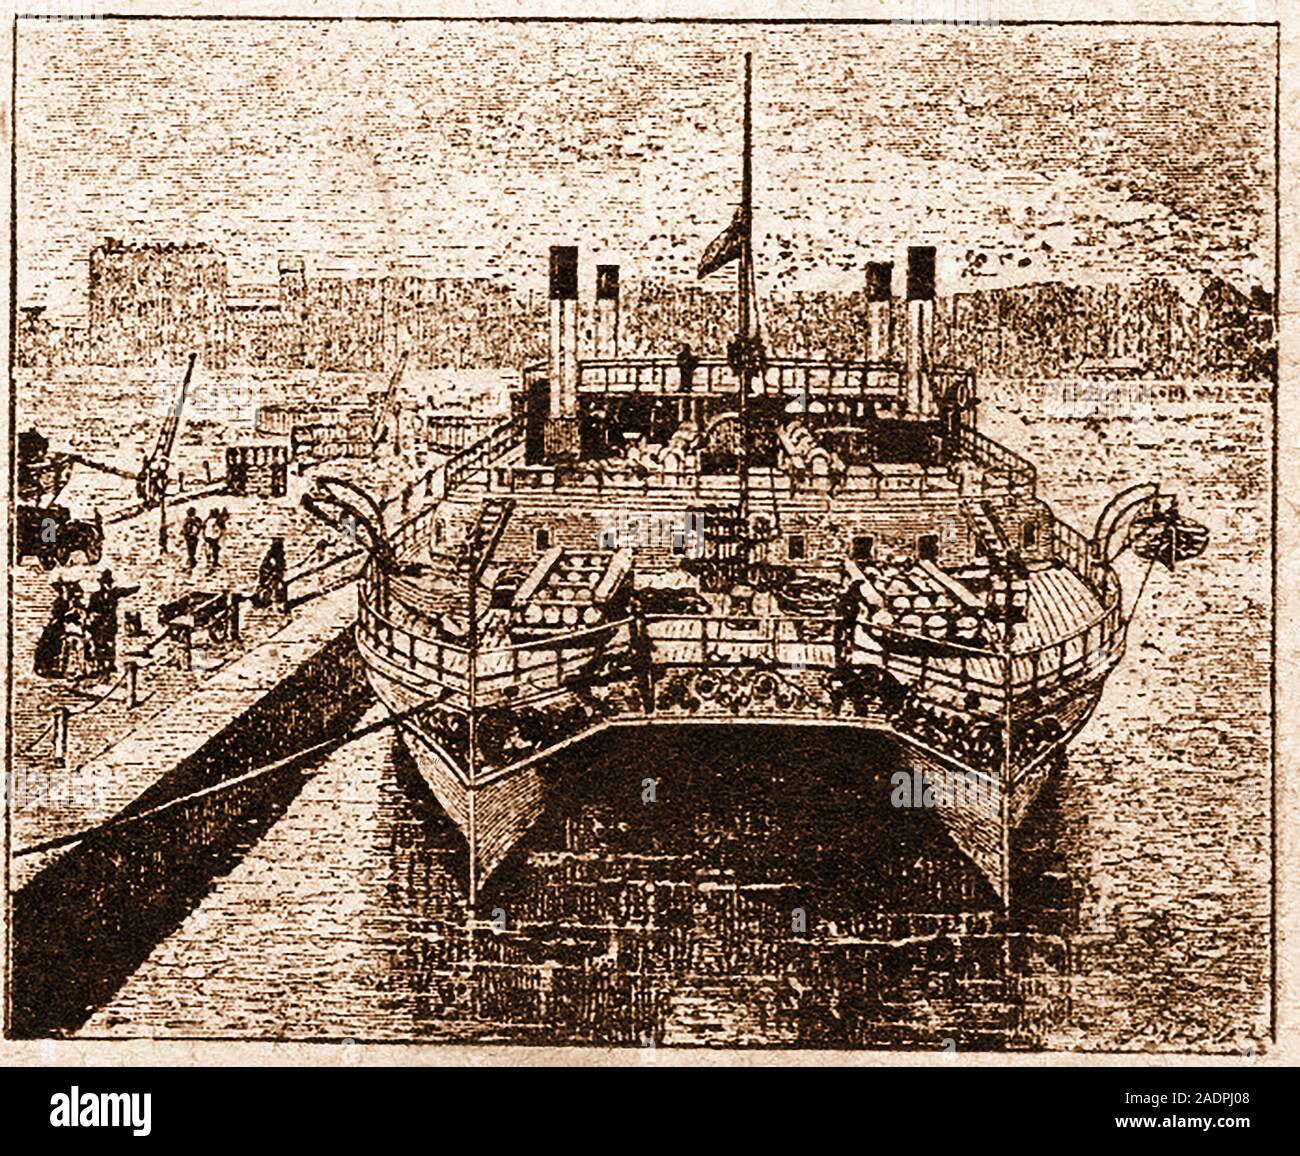 Seltsam frühen Erfindungen - Doppel geschält Katamaran Stil Frachtschiff. Ein Prototyp wurde von der Thames Ironworks & Shipbuilding Co 1874 gebaut, aber dann ist es für die Geschichte verloren. Stockfoto